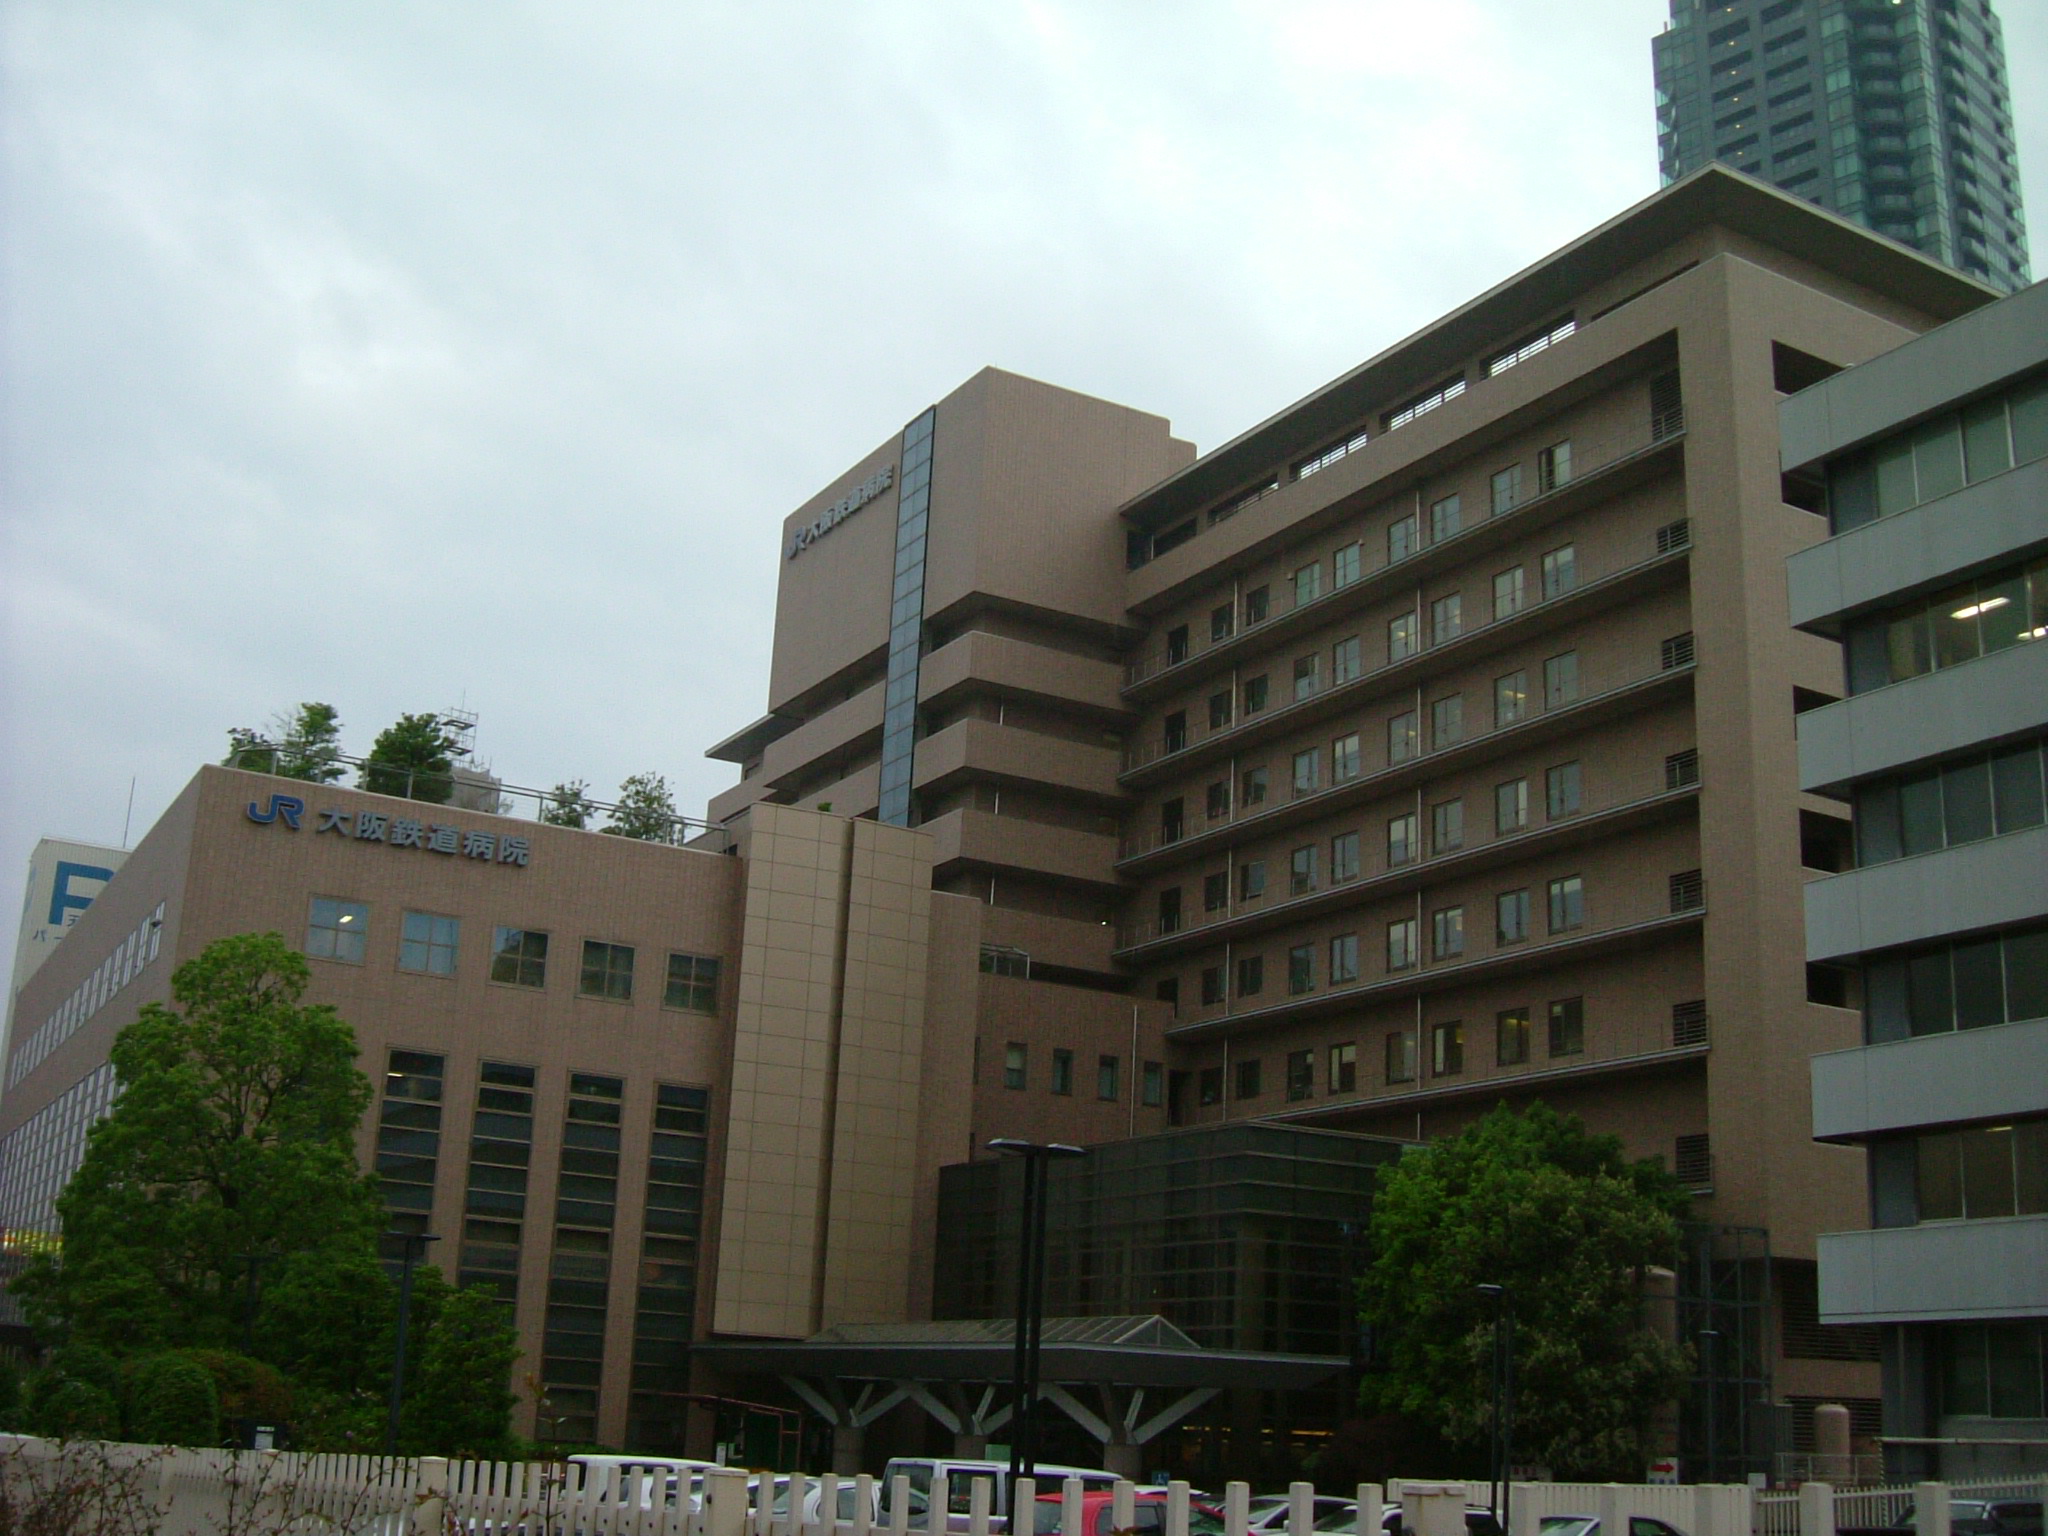 Hospital. 984m to Osaka railway hospital (hospital)